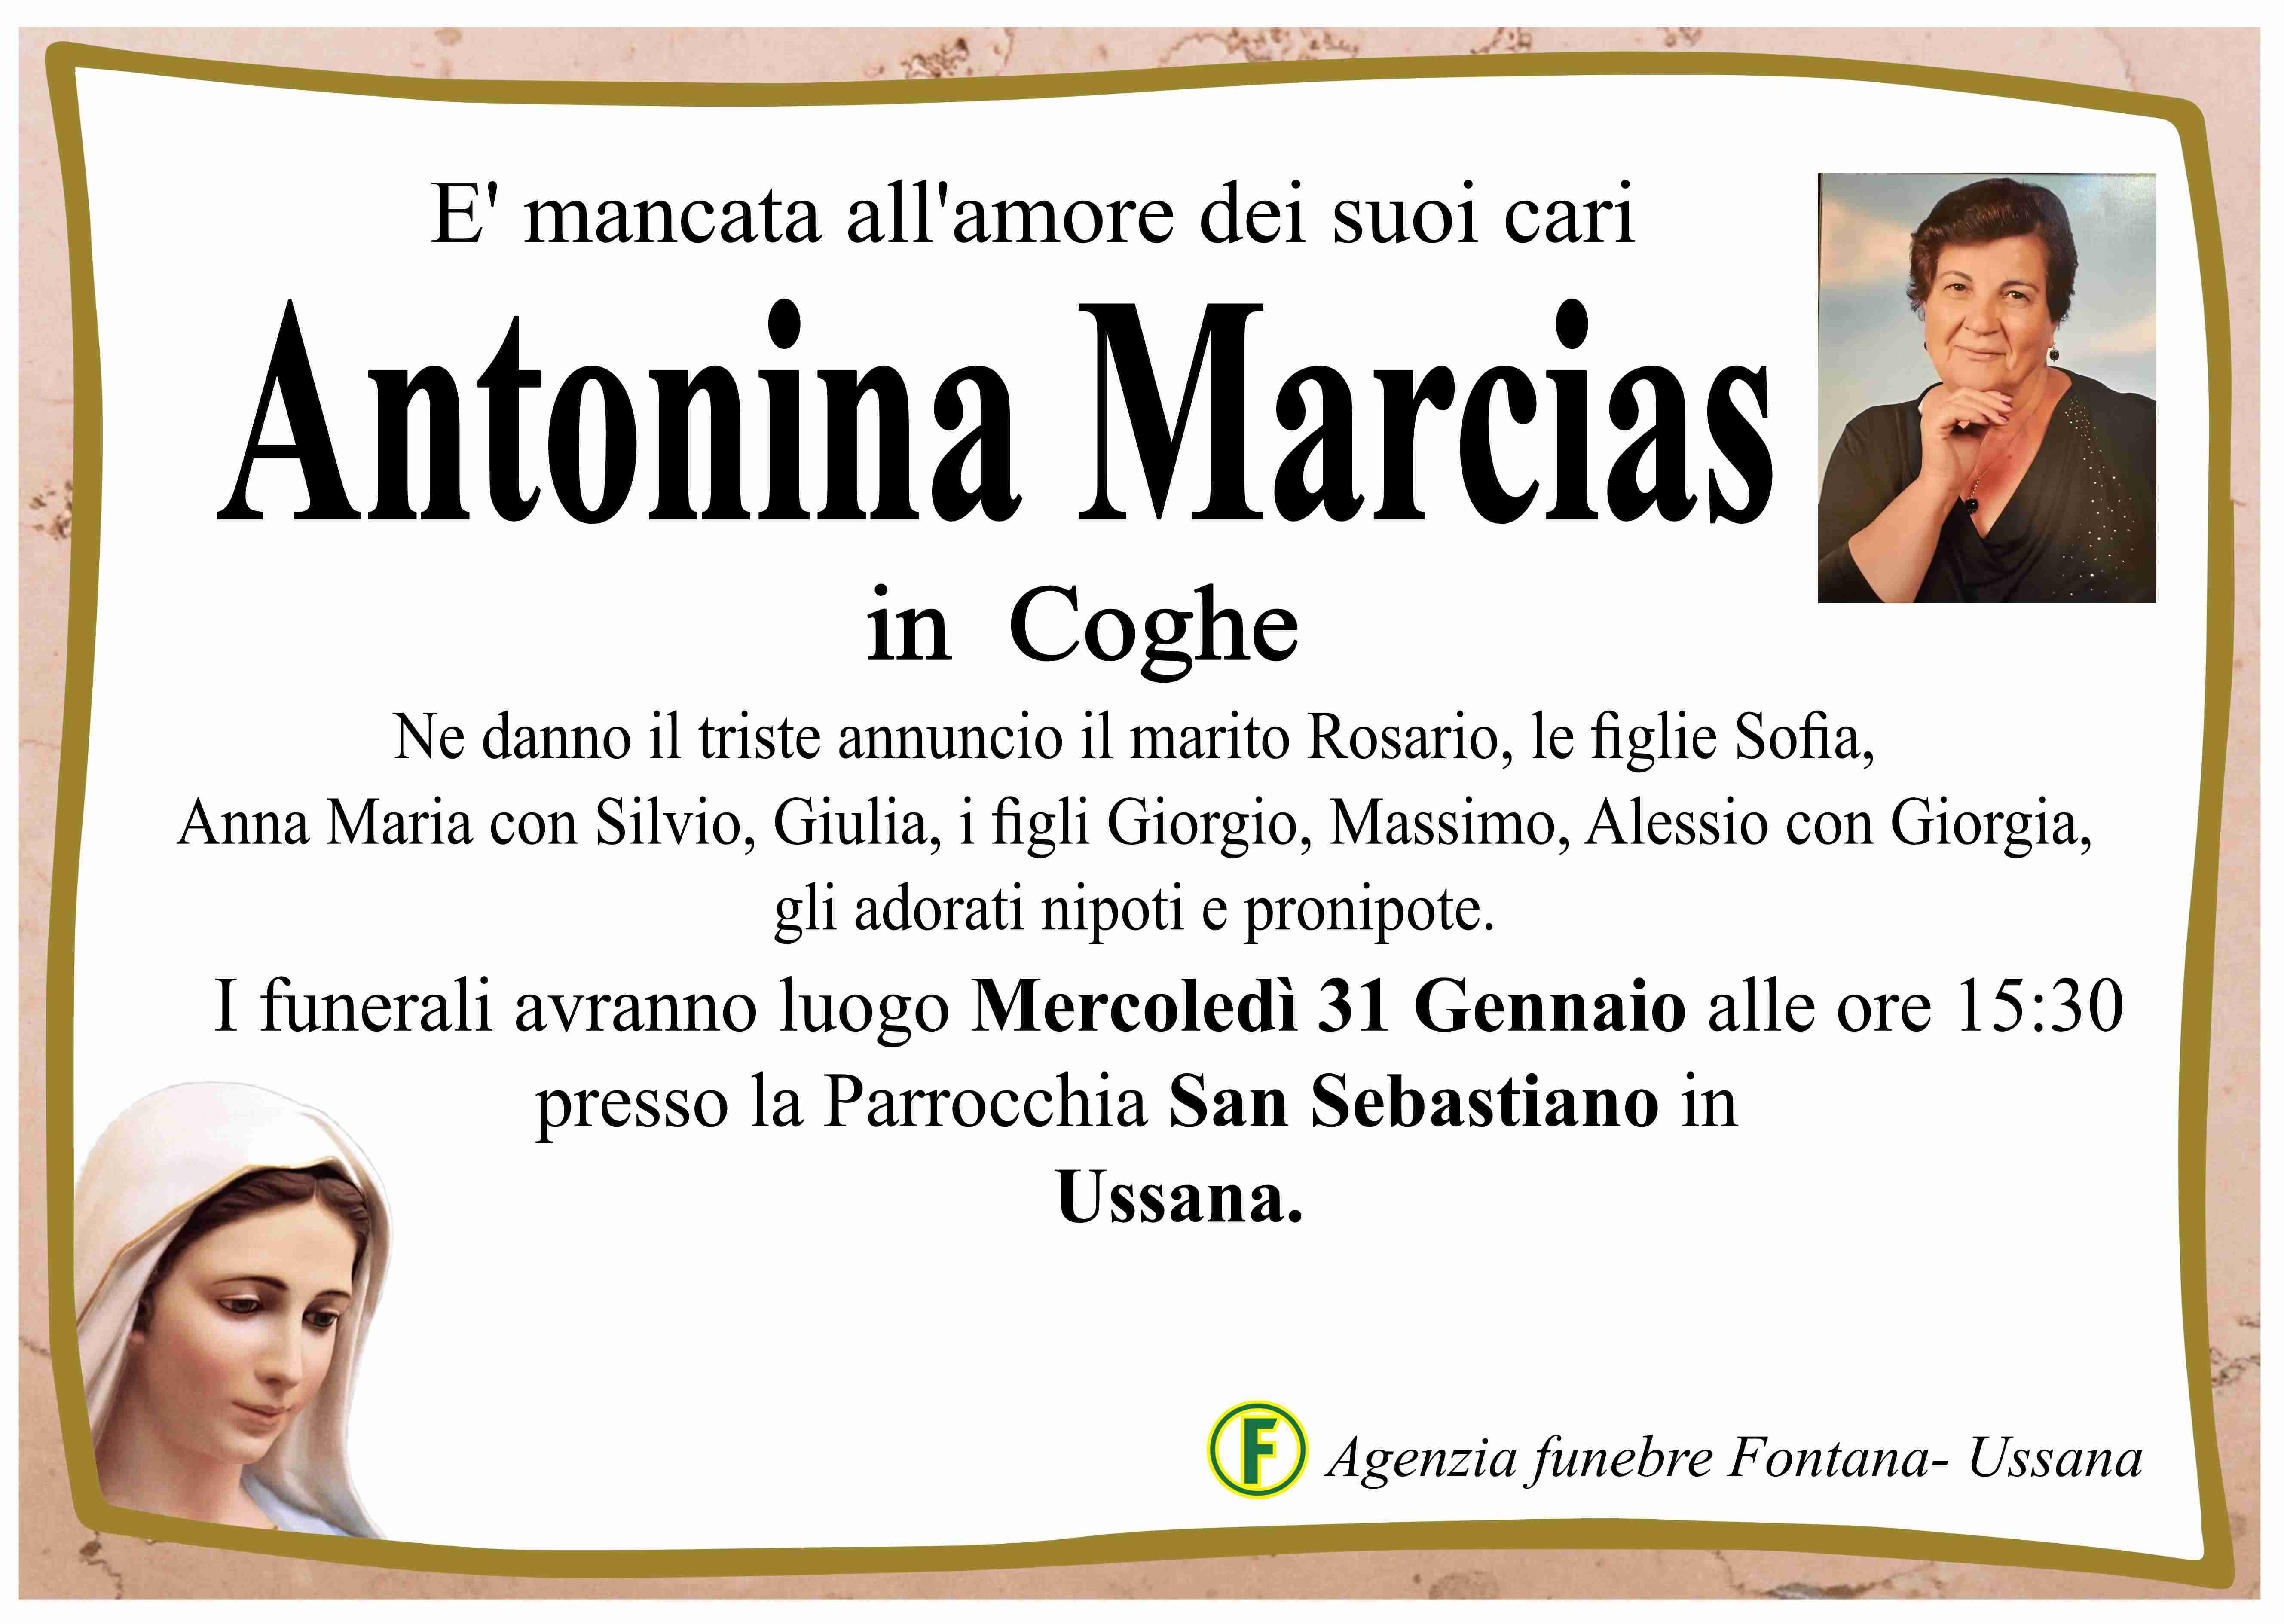 Antonina Marcias